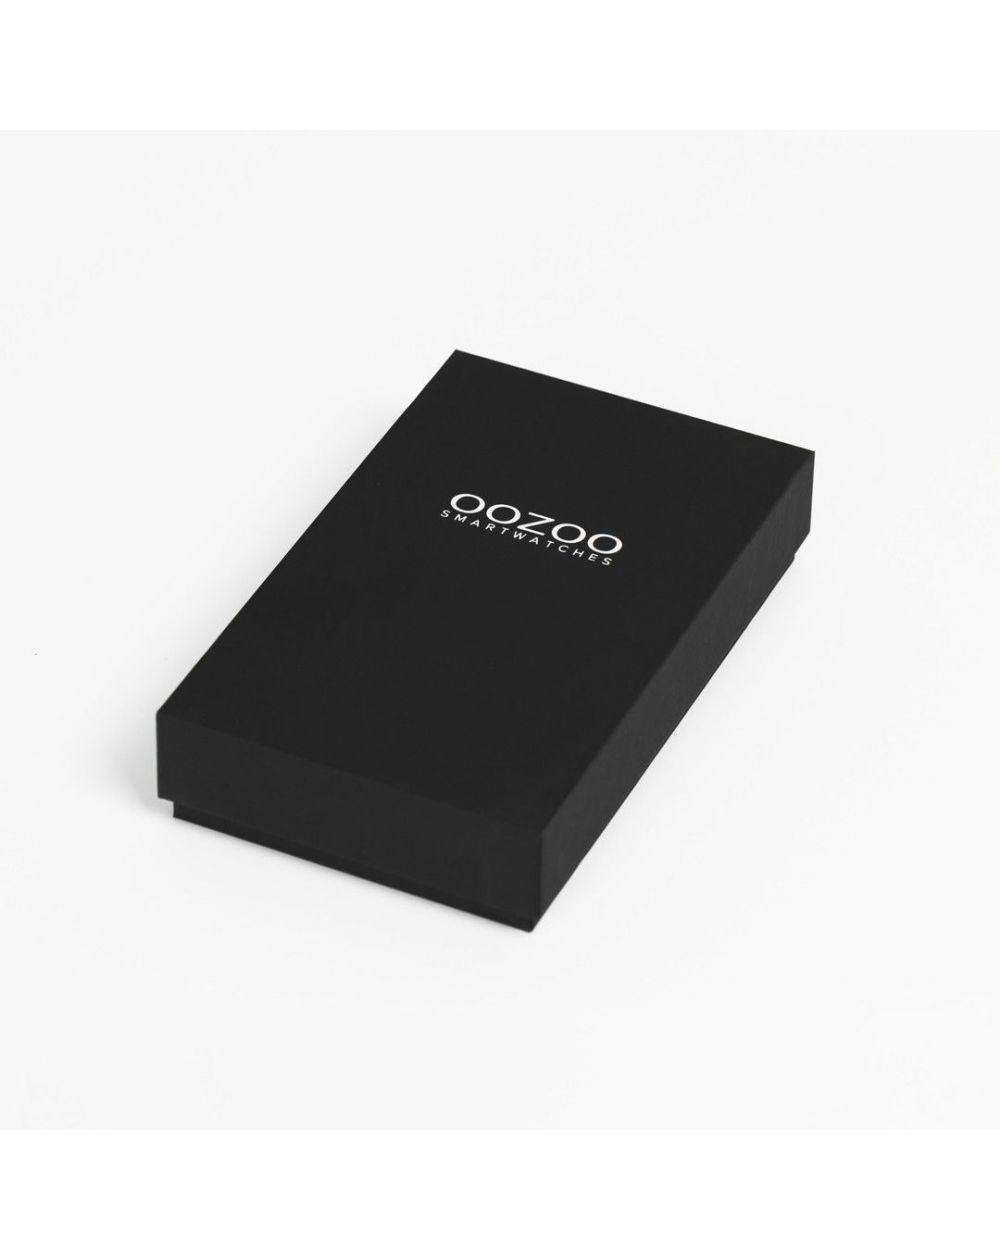 Montre Oozoo Q00300 - Smartwatch - Marque OOZOO - Livraison gratuite